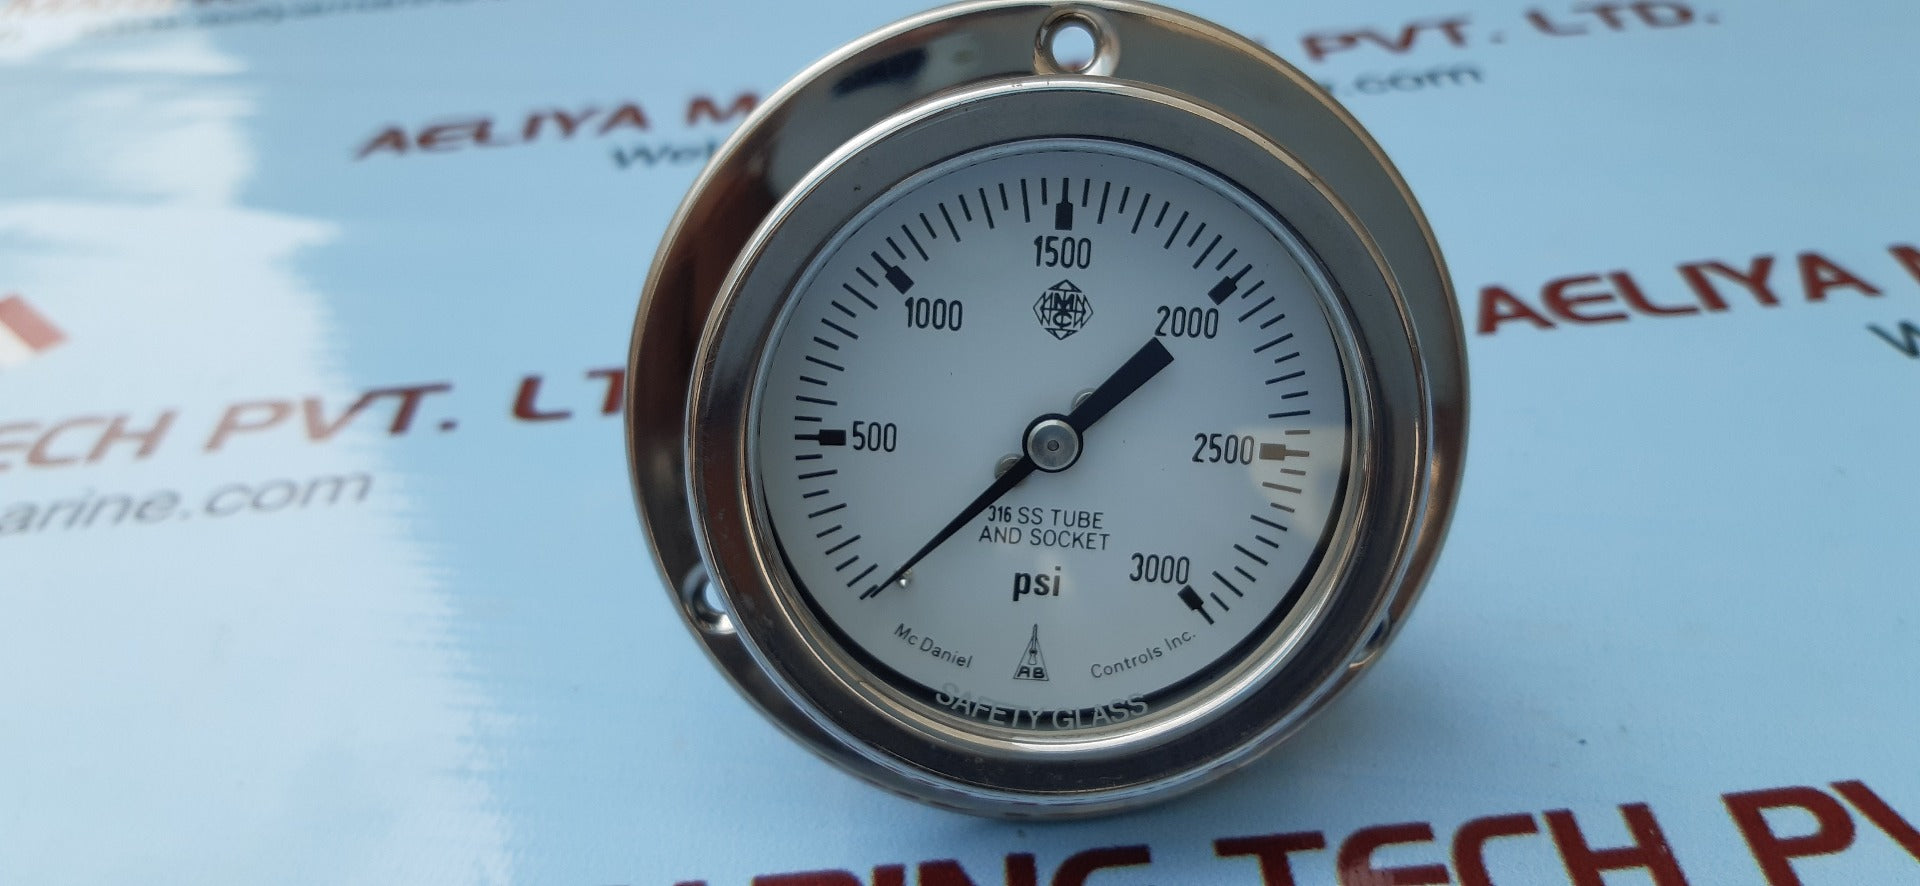 Mc daniel tube and socket 316ss pressure gauge 0-3000 psi